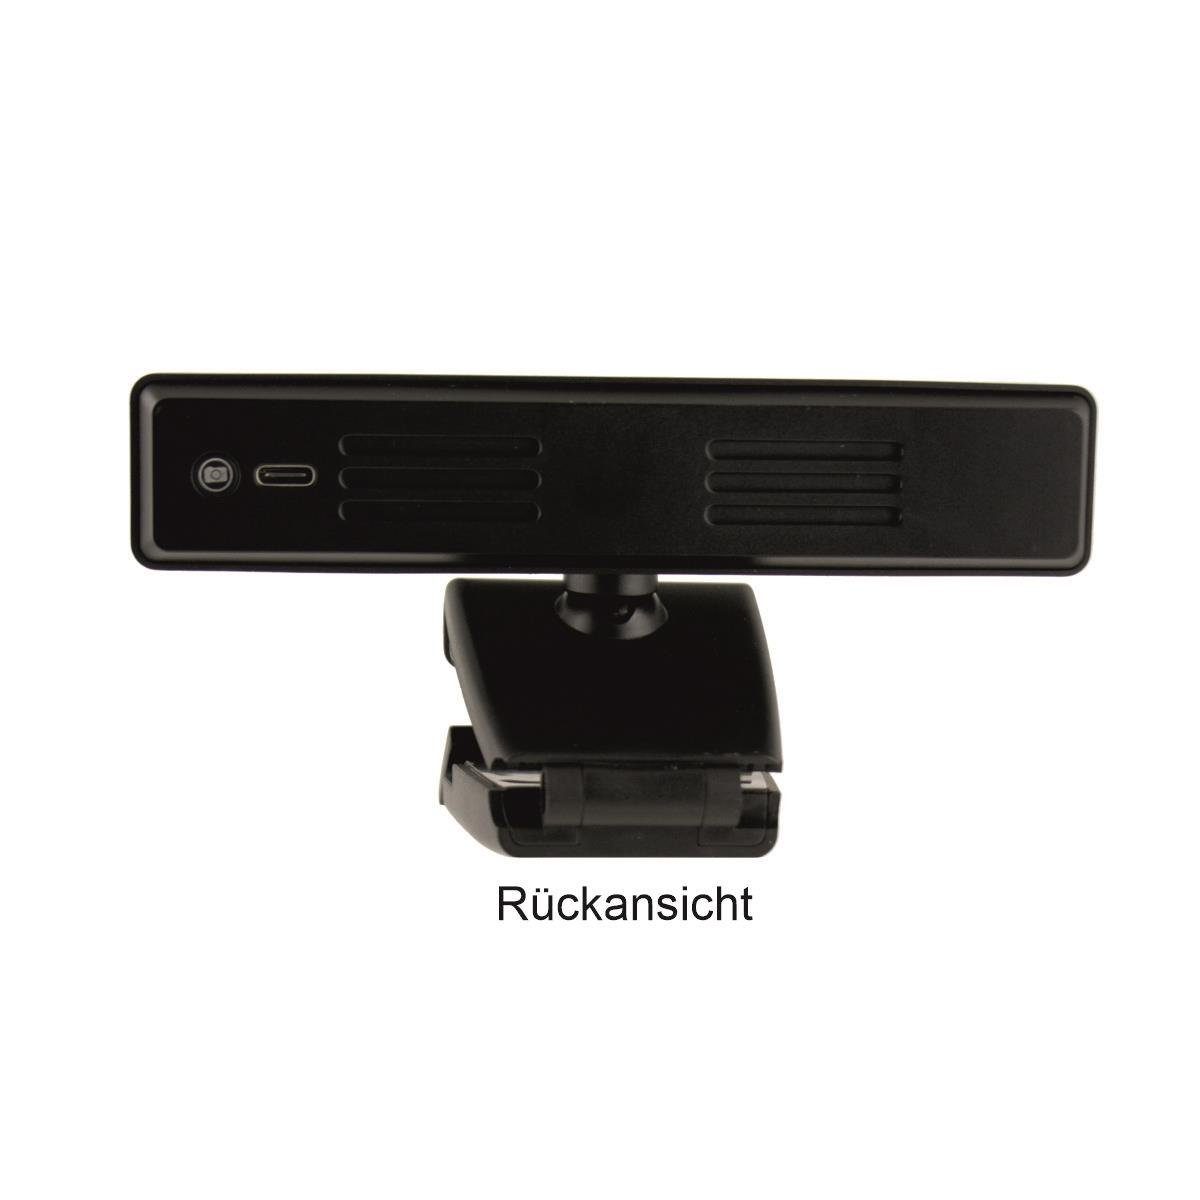 Full Webcam NW) Blizzard Office Blizzard HD-Webcam kein A-380Pro UHD (4K,